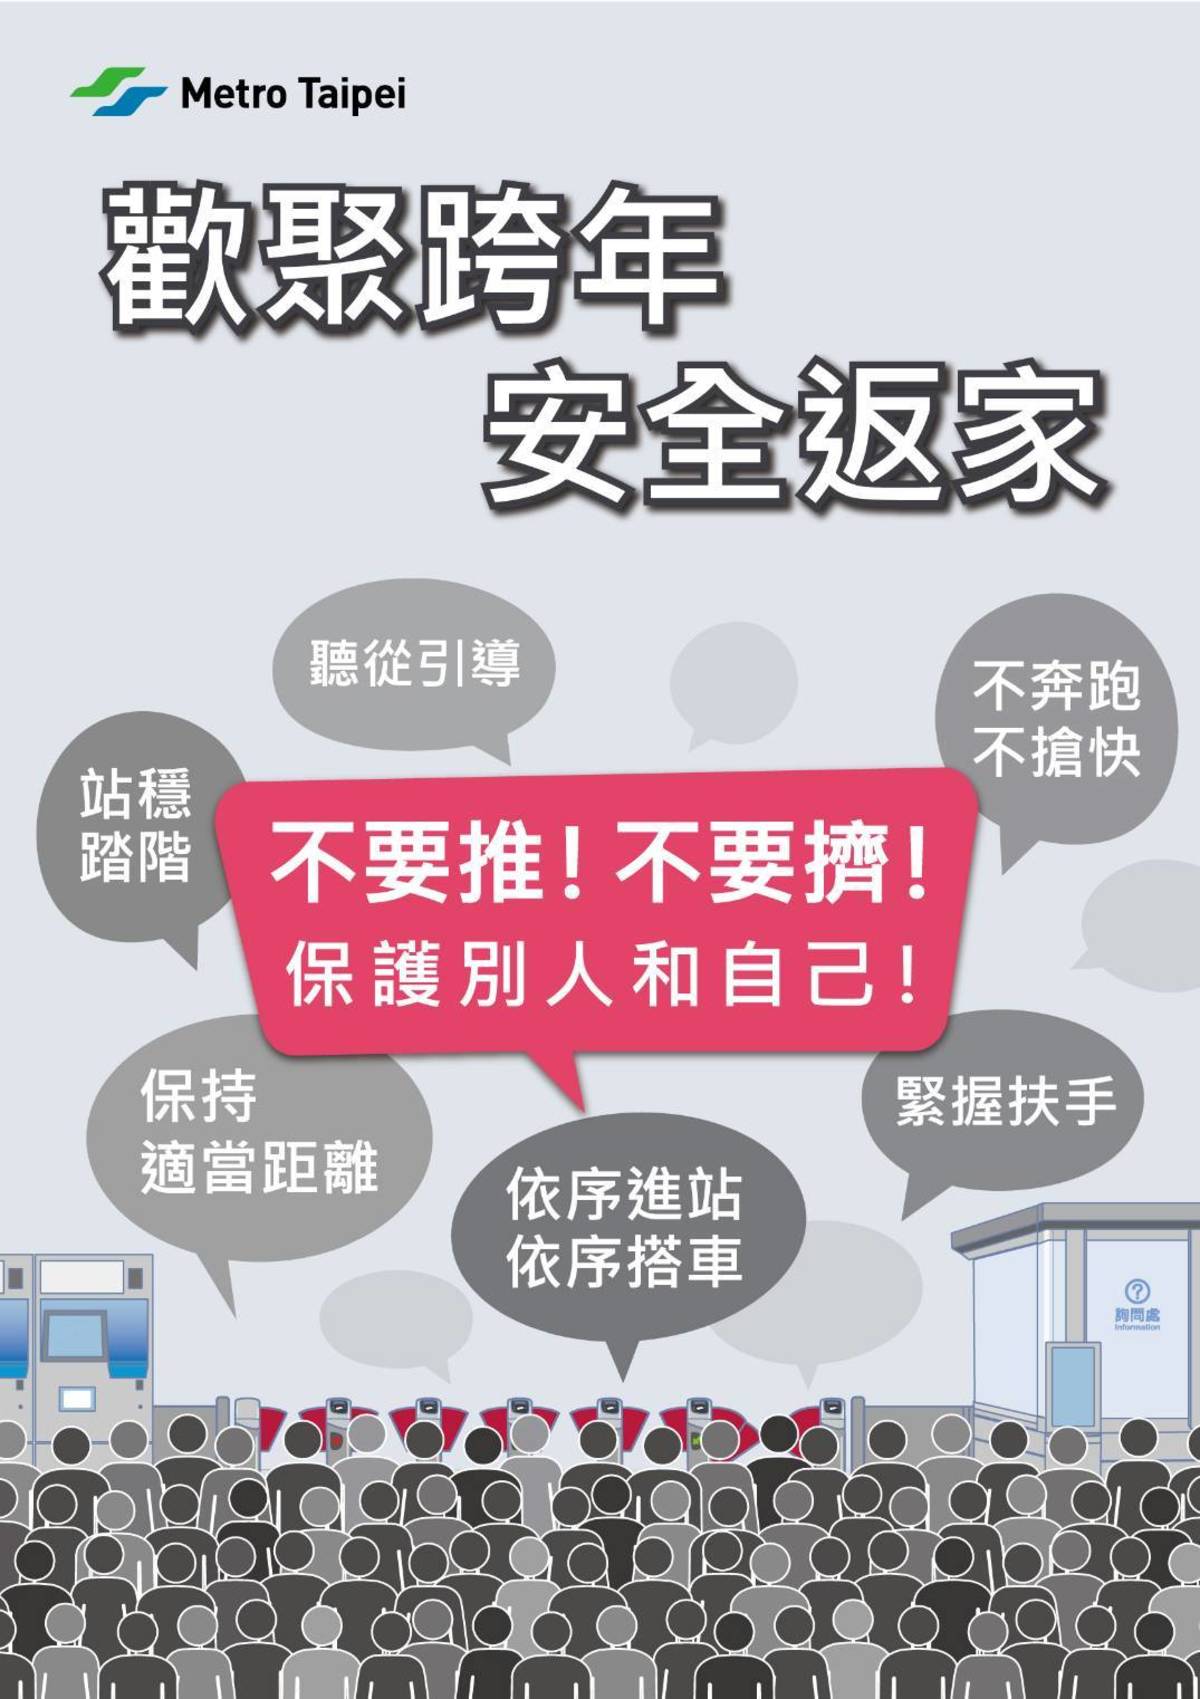 臺北捷運呼籲民眾謹記跨年3要訣「不要推、不要擠、保護別人和自己」

